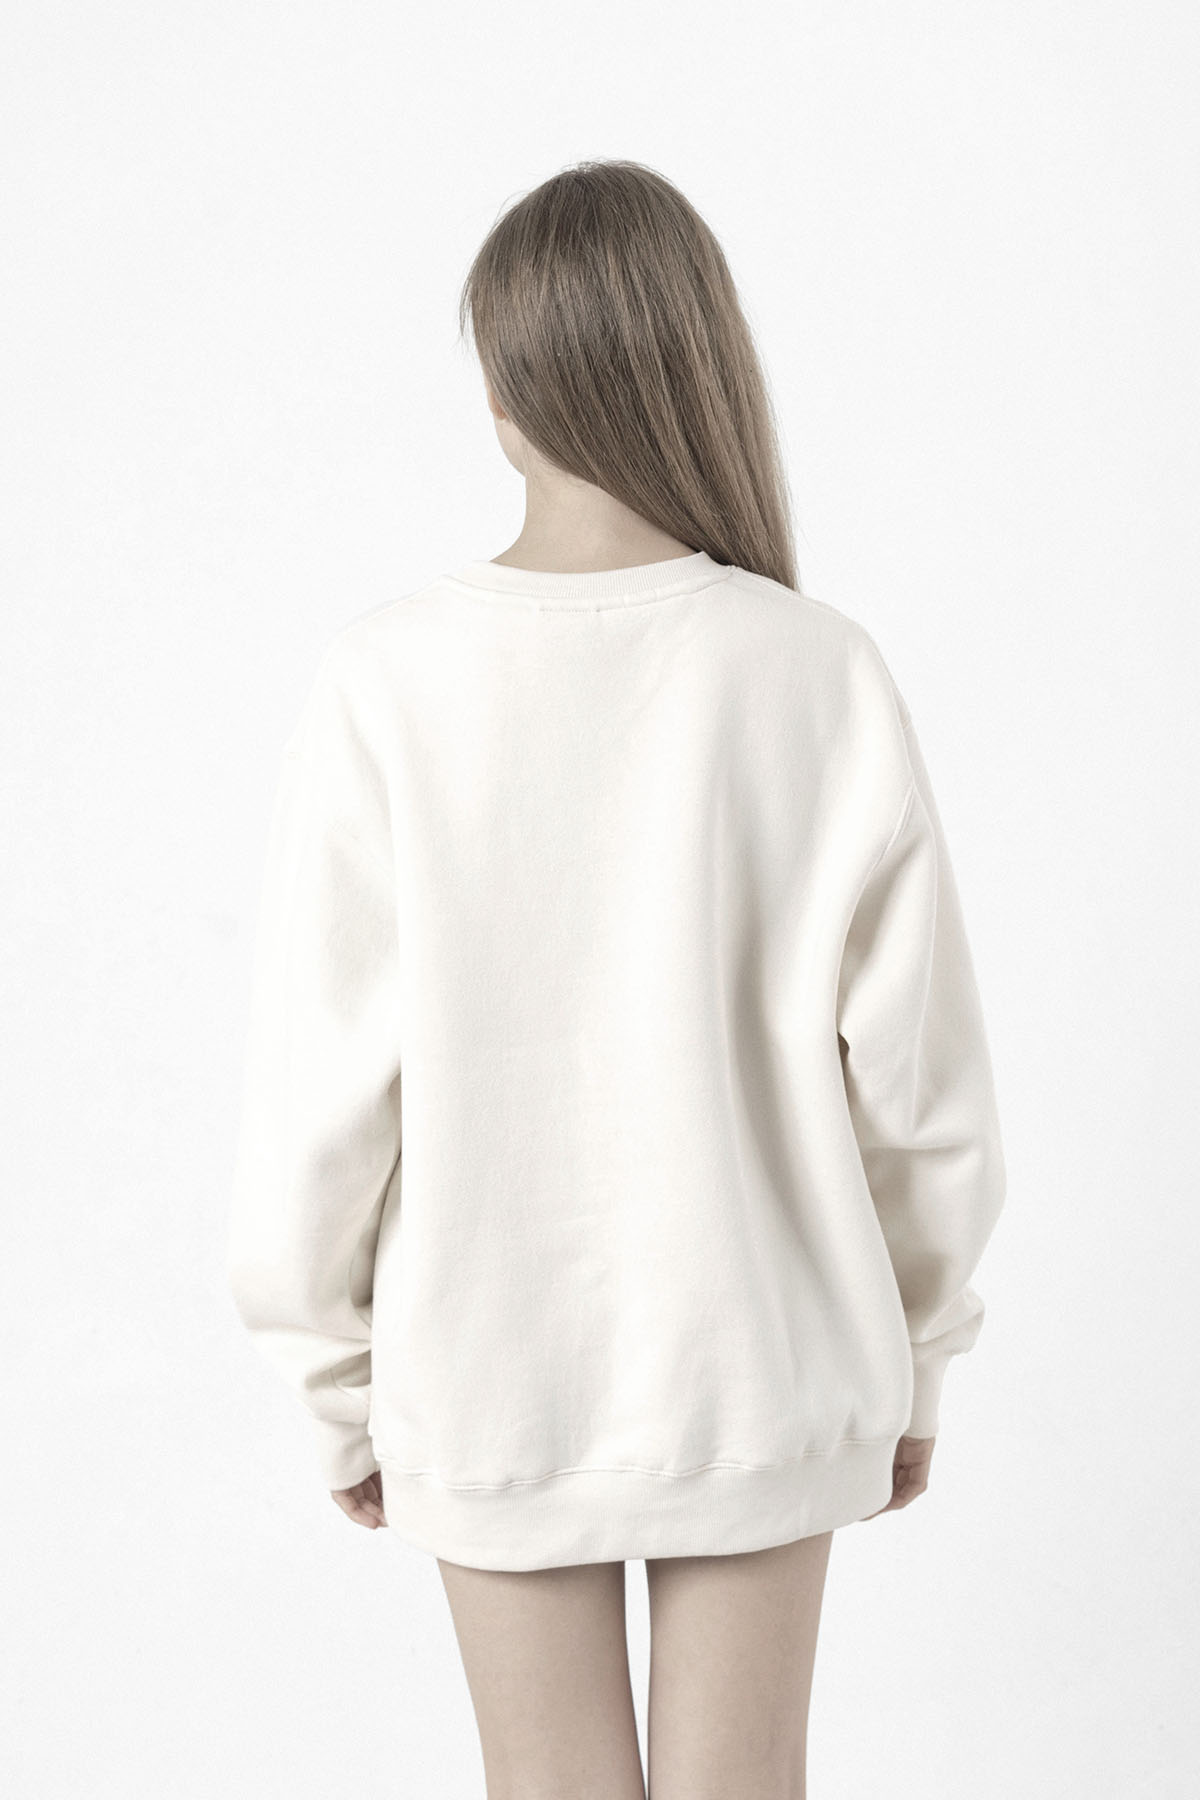 Sense8 Sensates Cluster Beyaz Kadın 2ip Sweatshirt